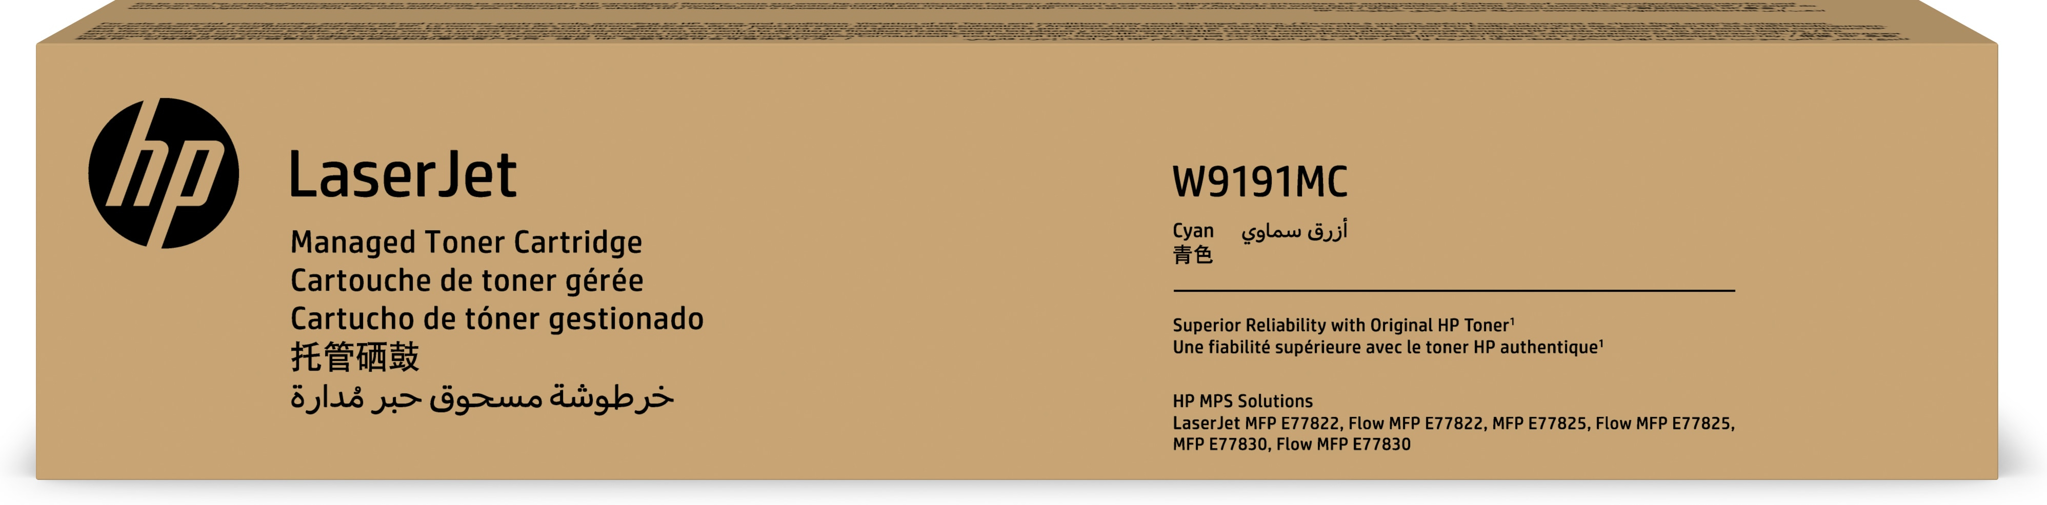 Bild von HP LaserJet W9191MC - 28000 Seiten - Cyan - 1 Stück(e)